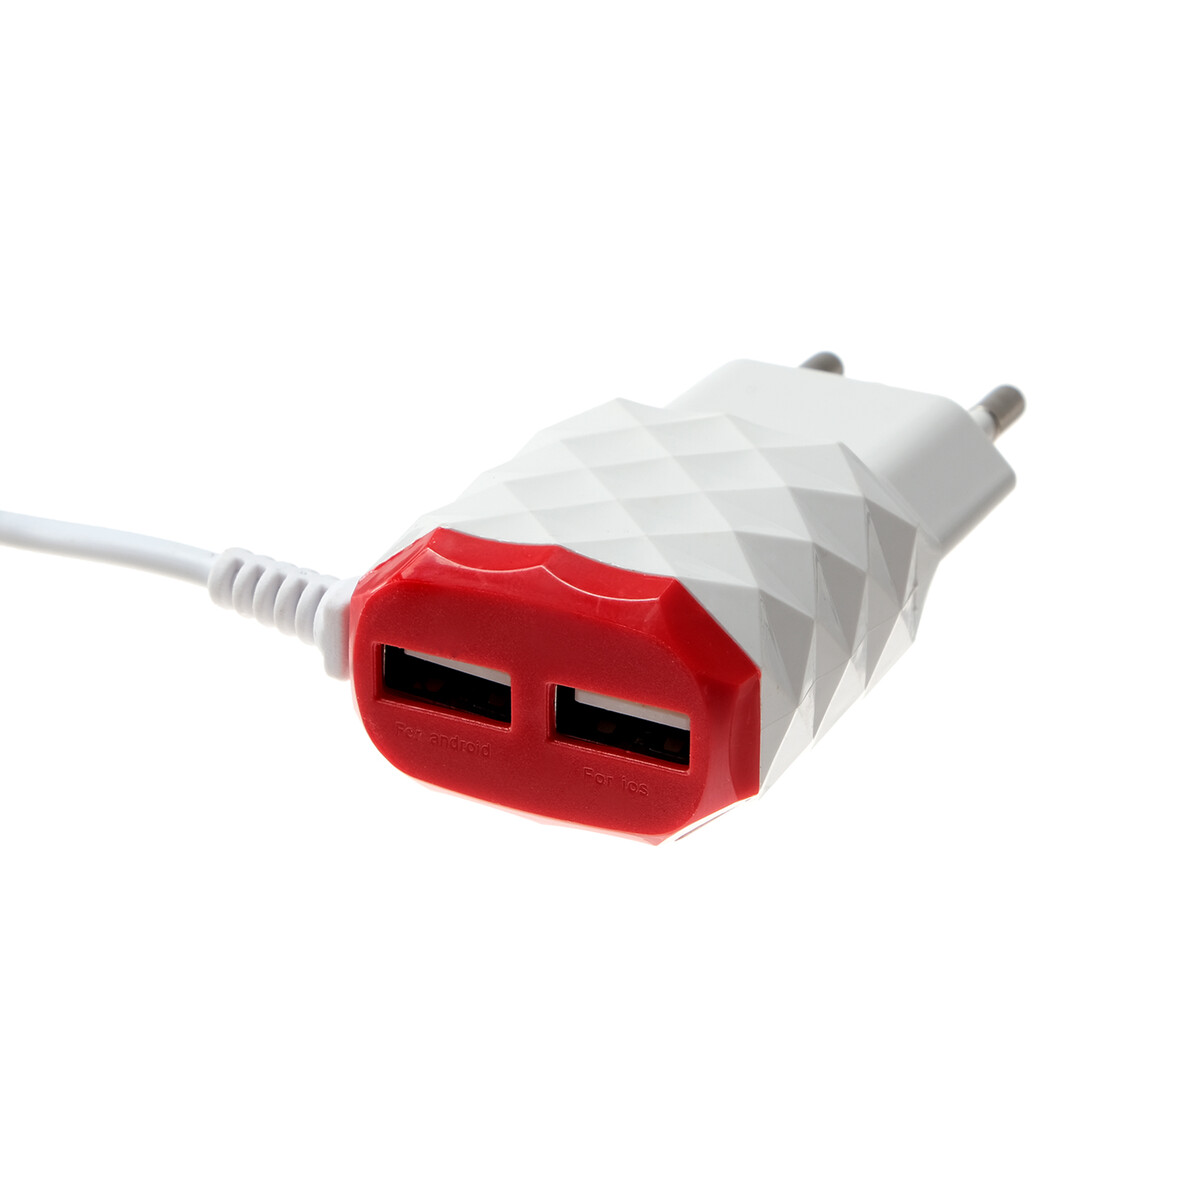 Сетевое зарядное устройство luazon lcc-25, 2 usb, 1 а, кабель microusb, красно-белое сетевое зарядное устройство tfn rapid 5a qc scp white б кабеля